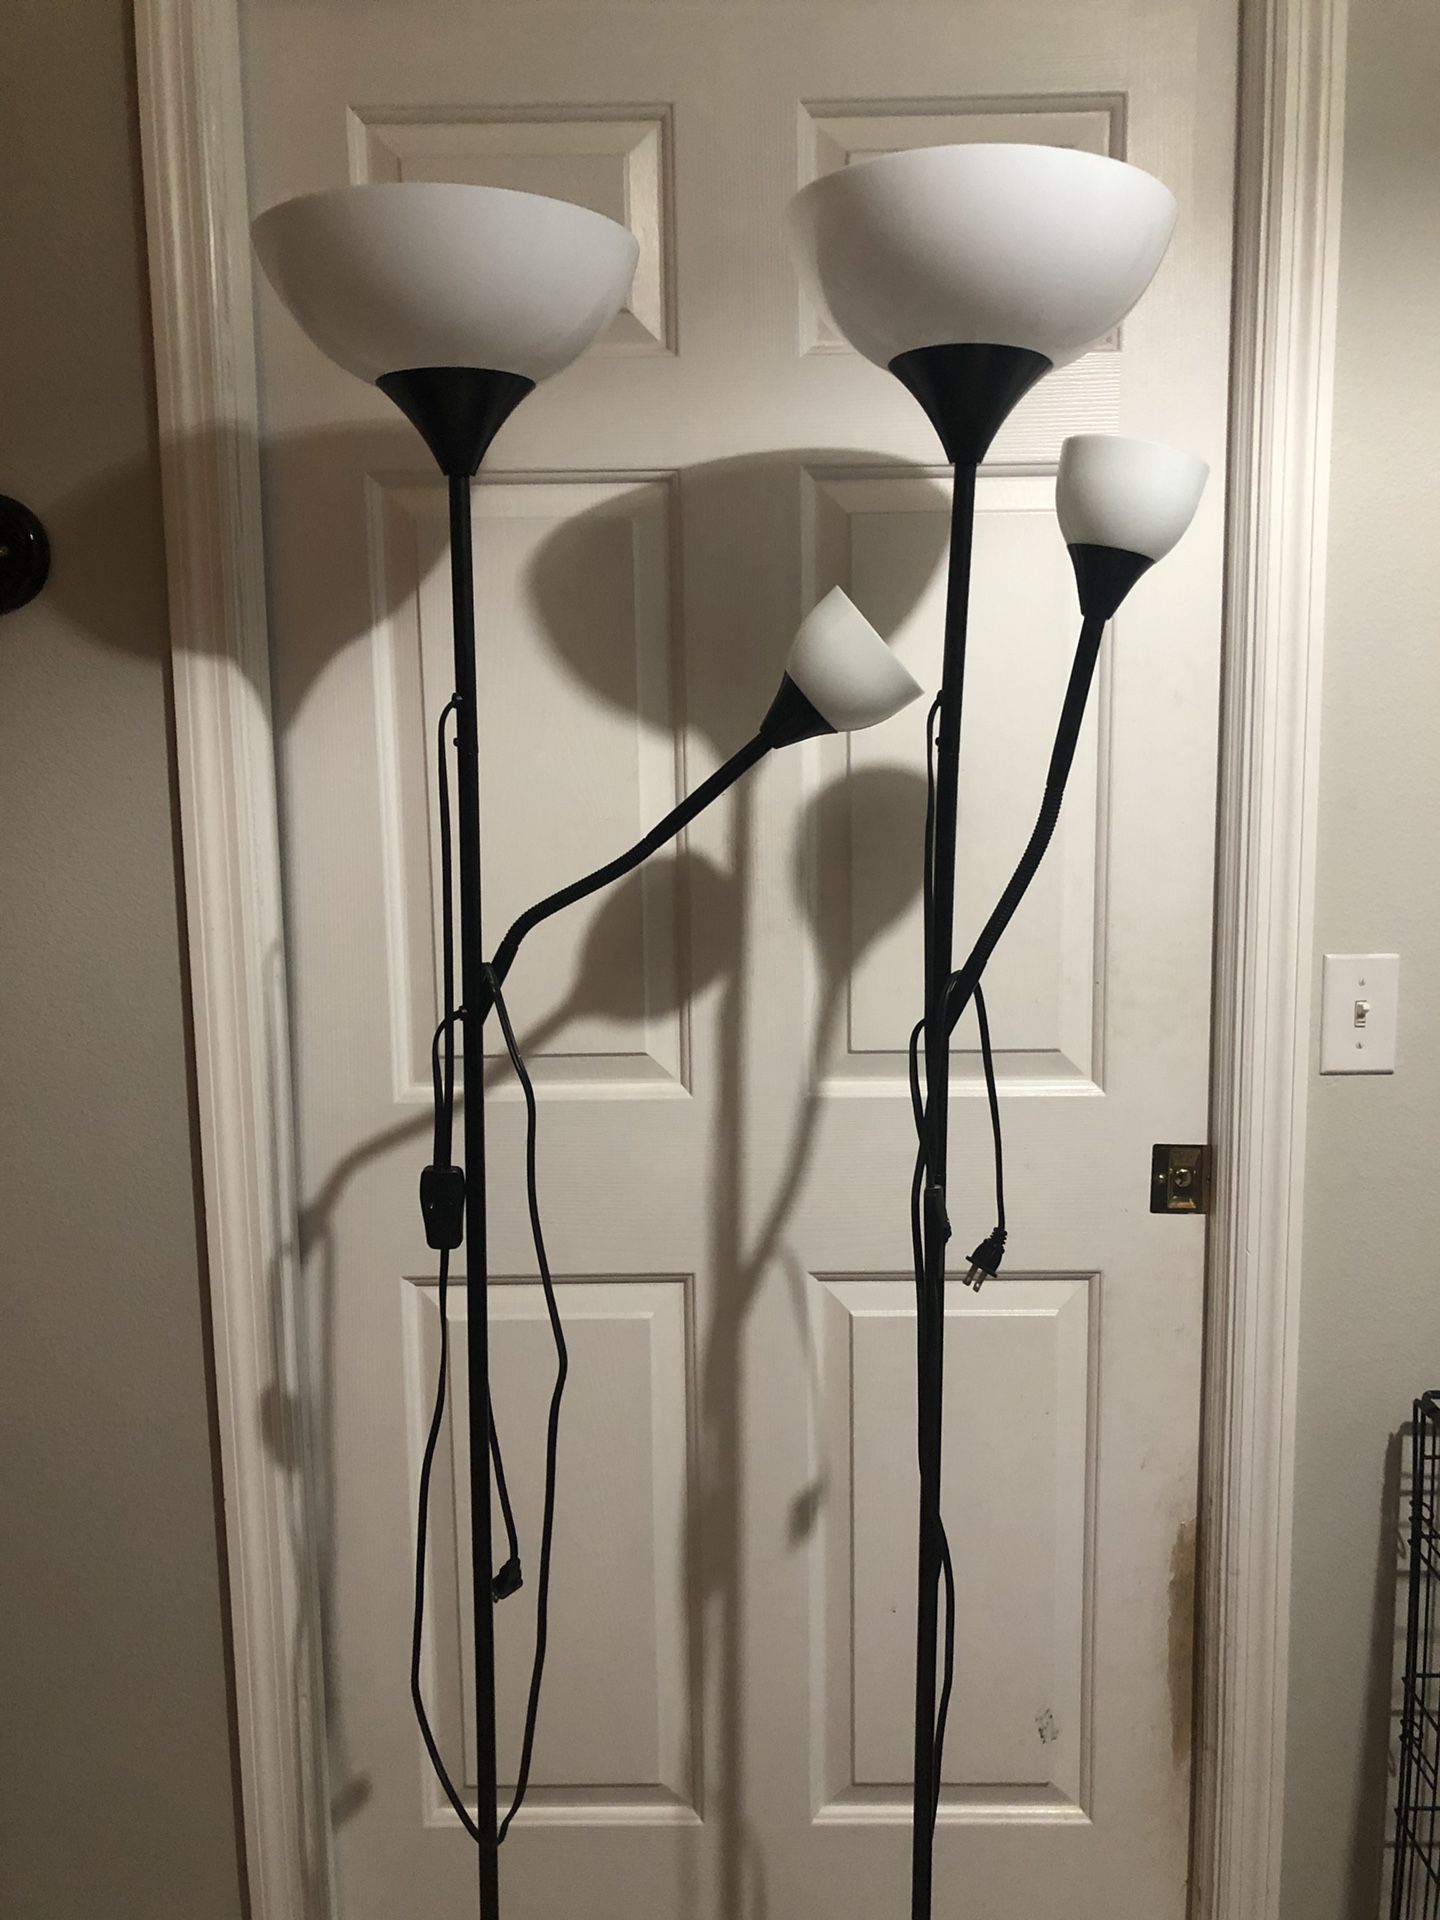 2 IKEA floor lamps